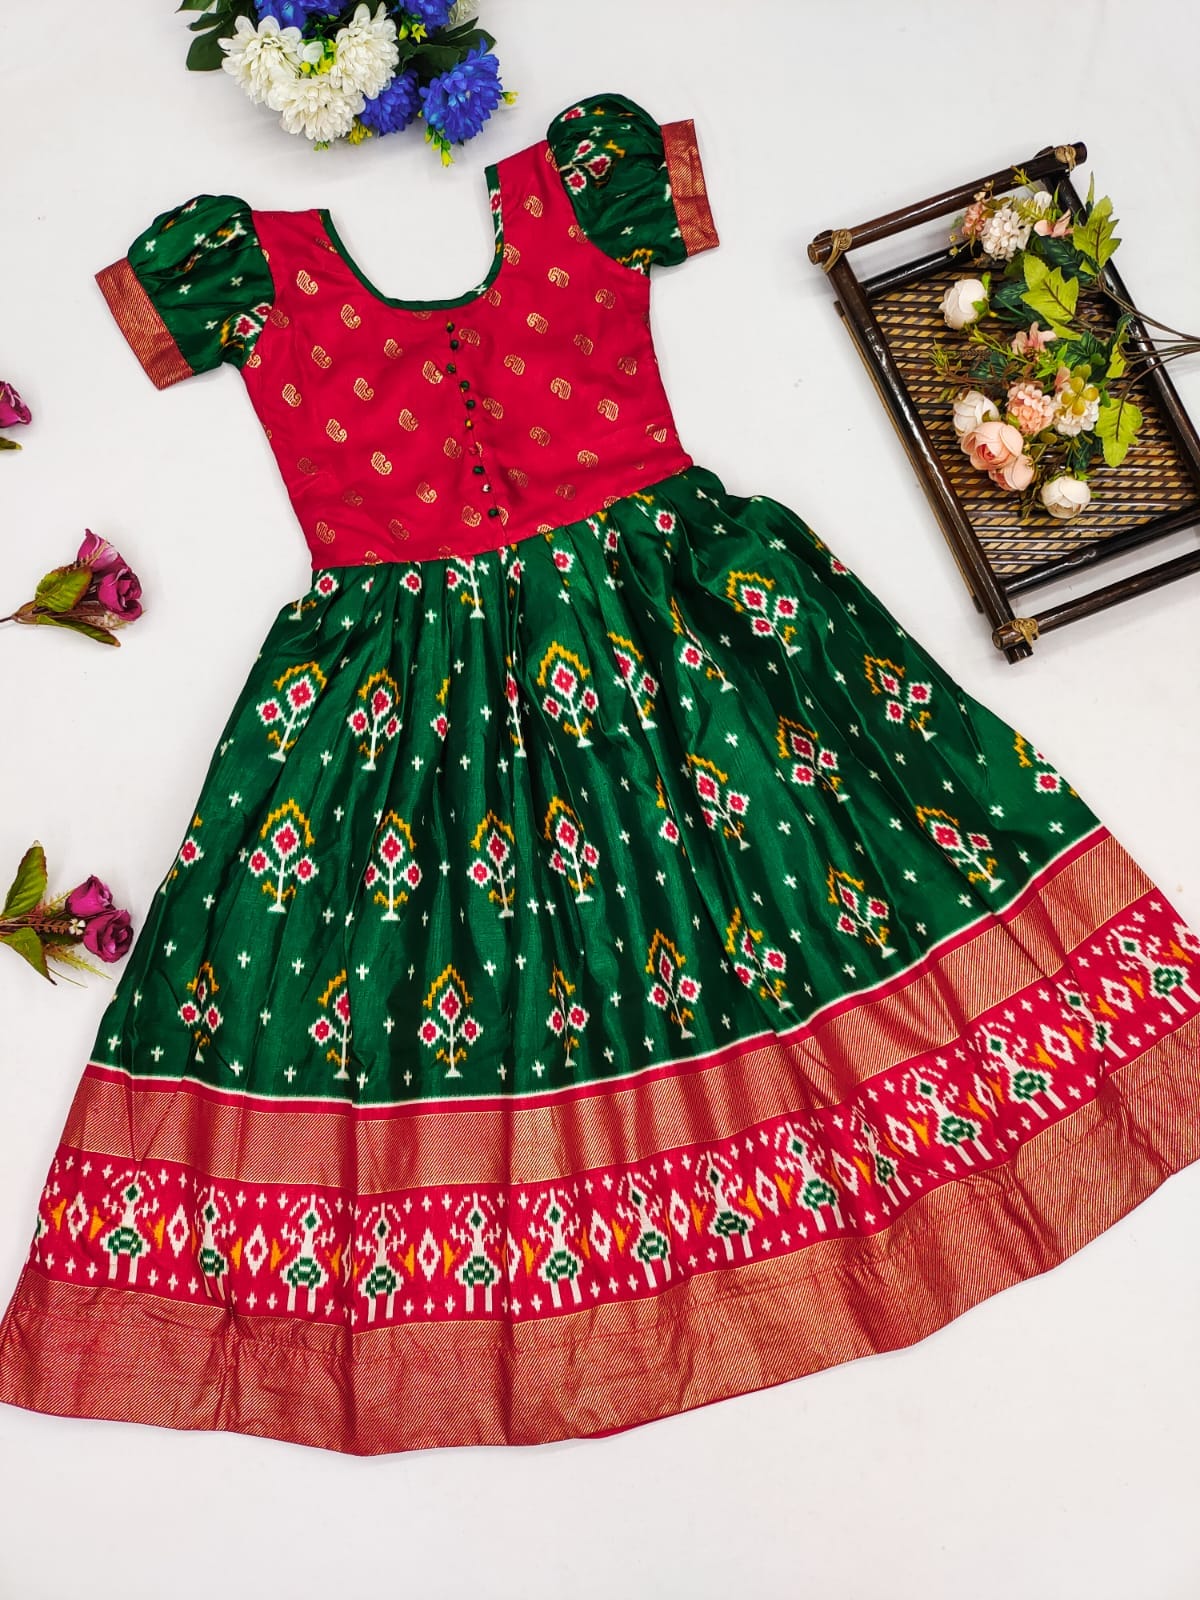 Taffeta Silk Blue Printed Exclusive Designer Dress at Rs 399 in Surat